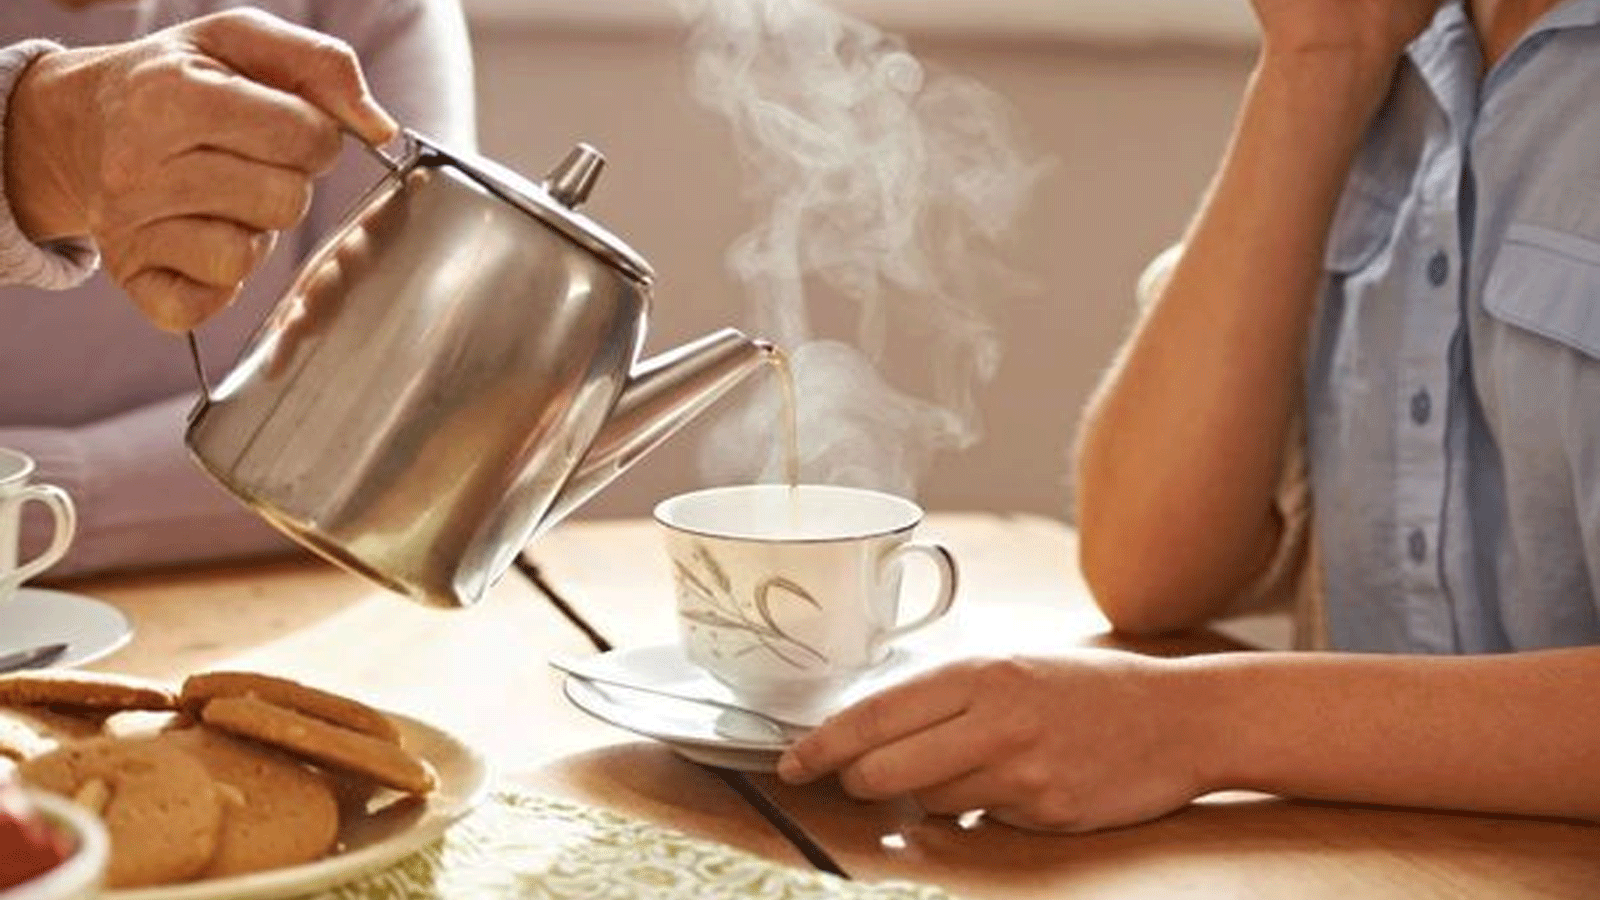 هيئة سلامة الأغذية في أيرلندا تنصح بعدم شرب الشاي مع بعض الأطعمة